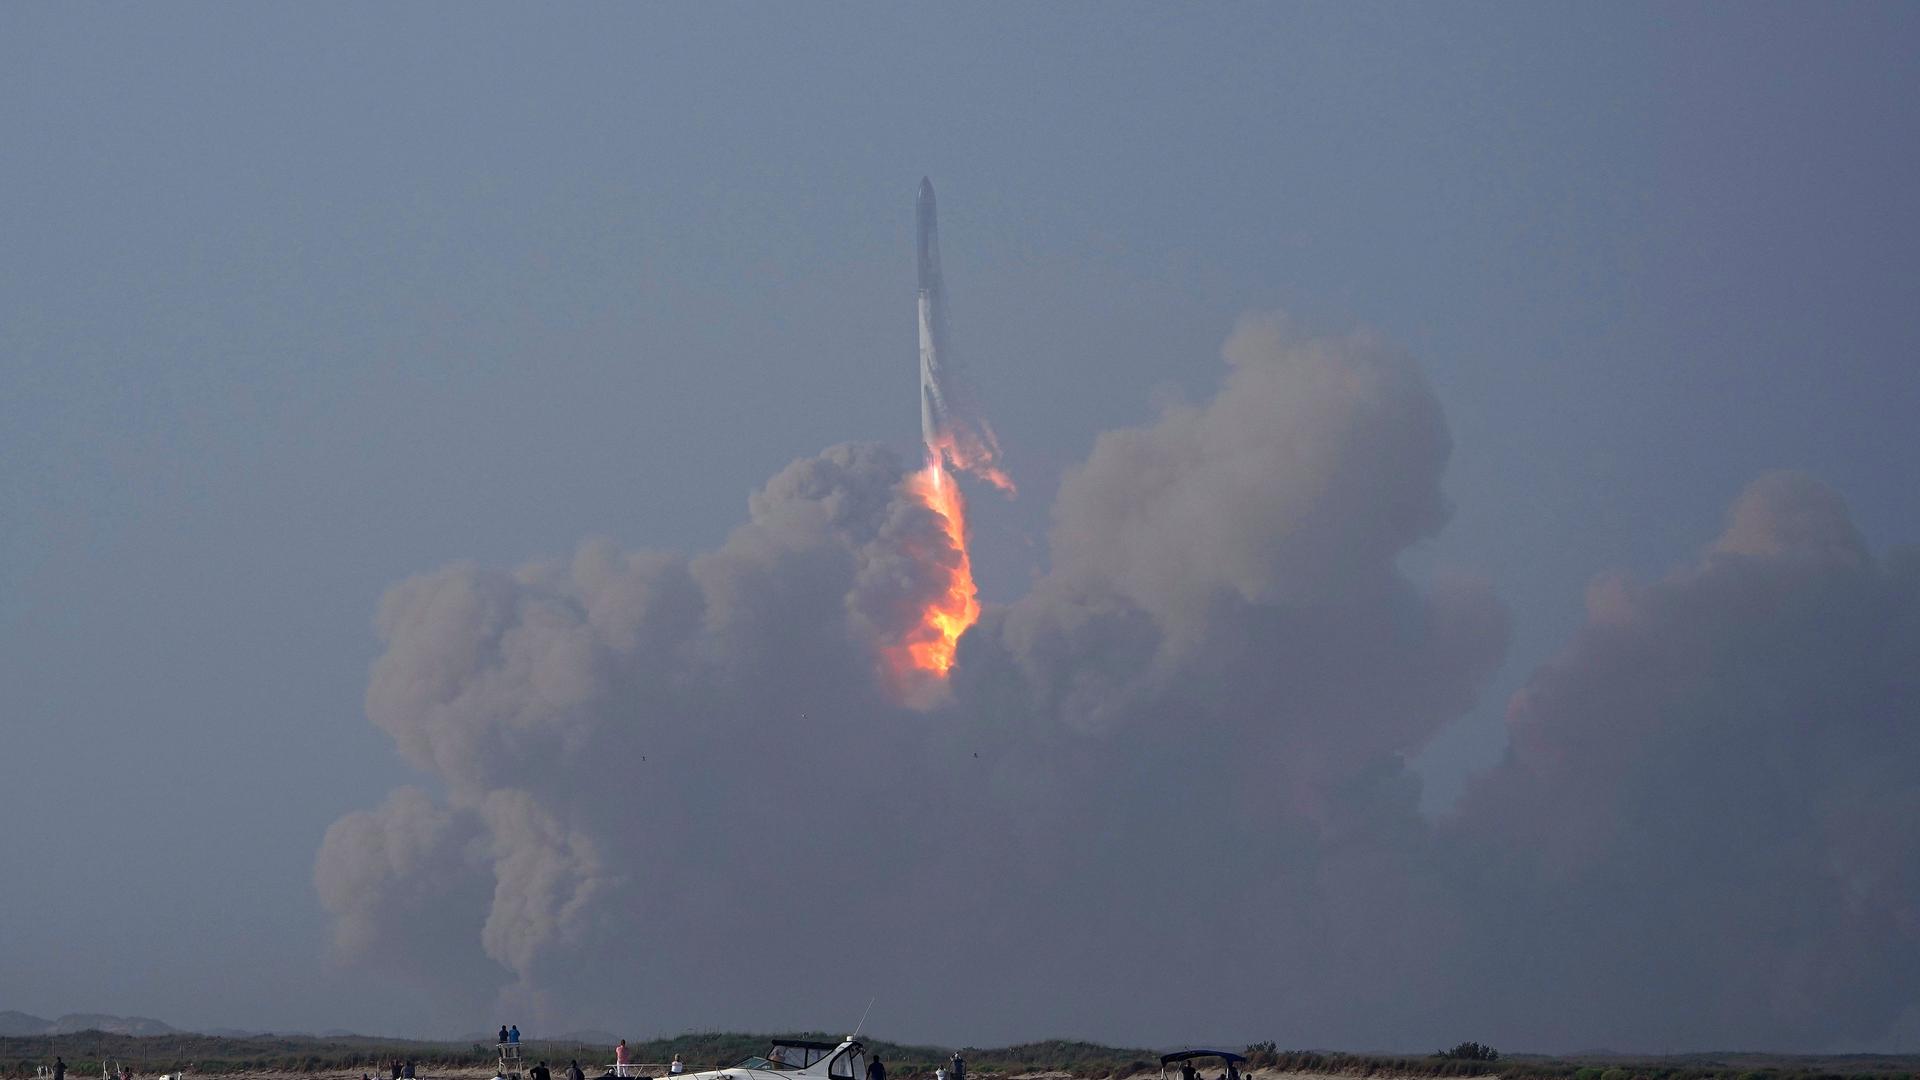 USA, Boca Chica: Das Raumschiff von SpaceX startet von der Starbase in Boca Chica. Der erste Testflug des bisher längsten jemals gebauten Raketensystems "StarshipX" ist wenige Minuten nach dem Start mit einem ungeplanten Auseinanderbrechen zu Ende gegangen.